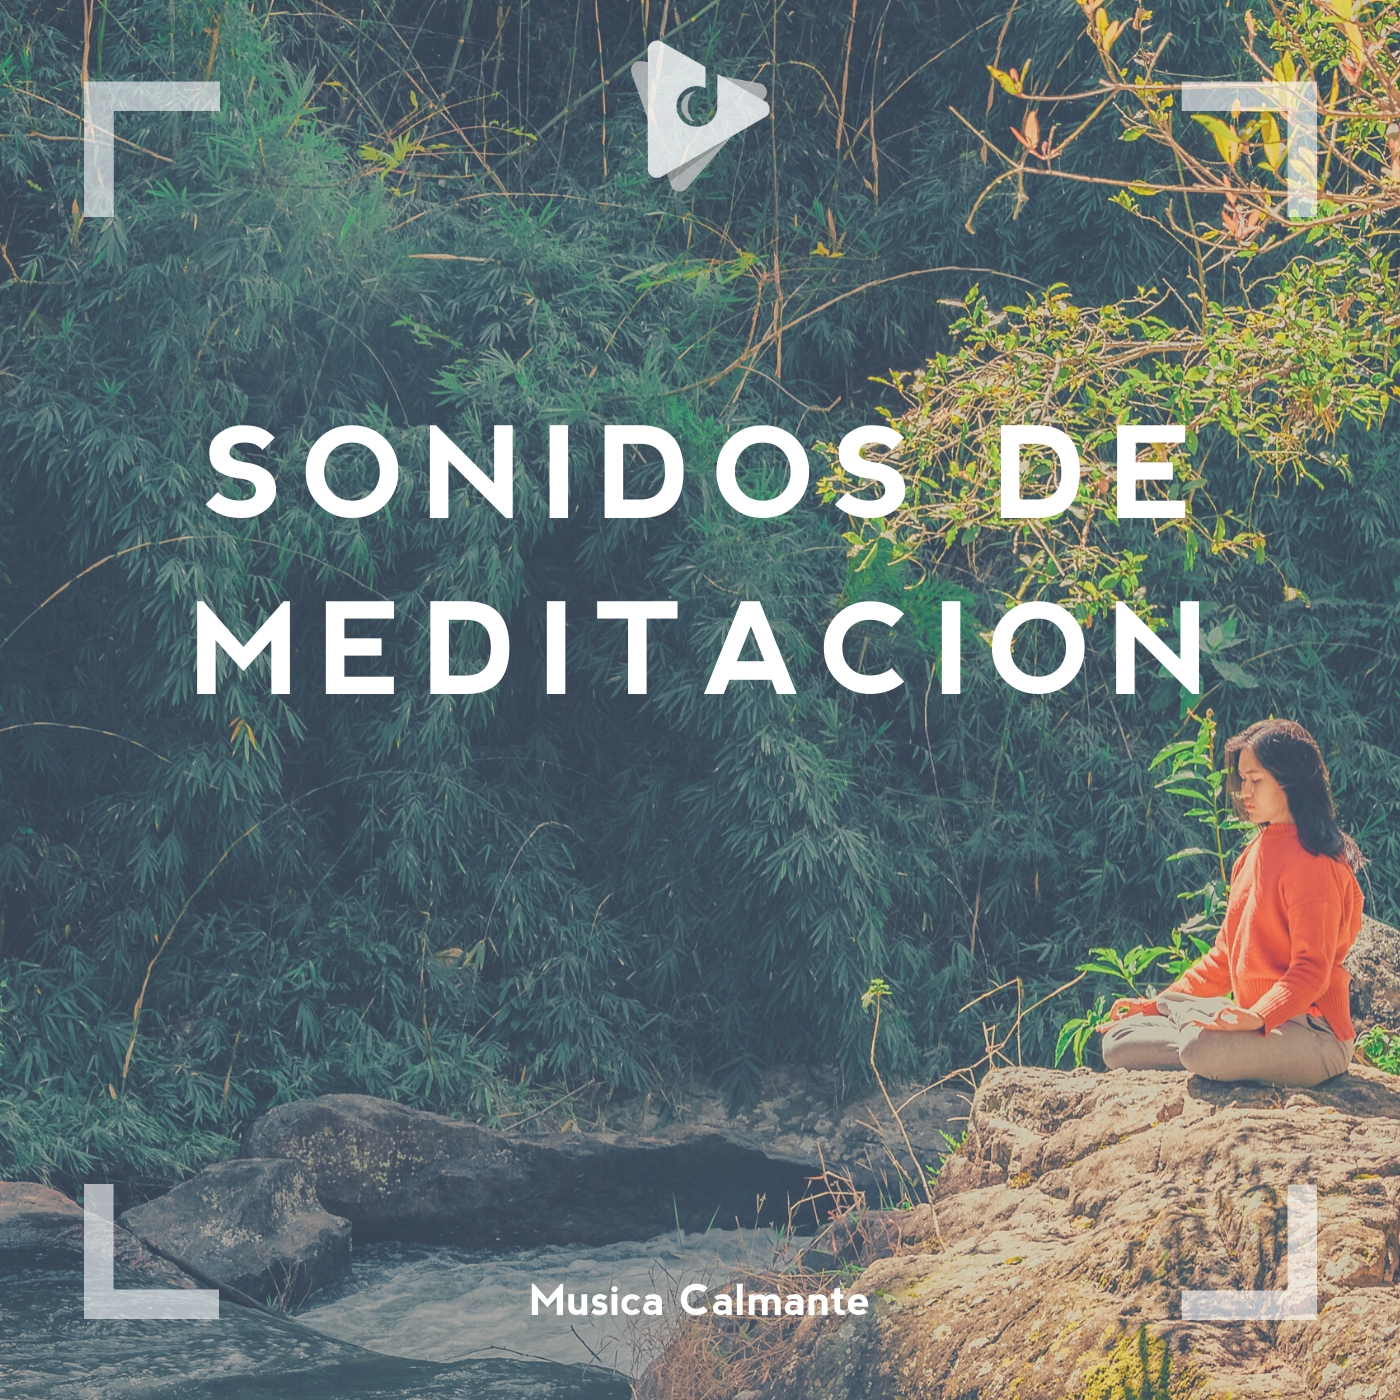 Sonidos de meditacion